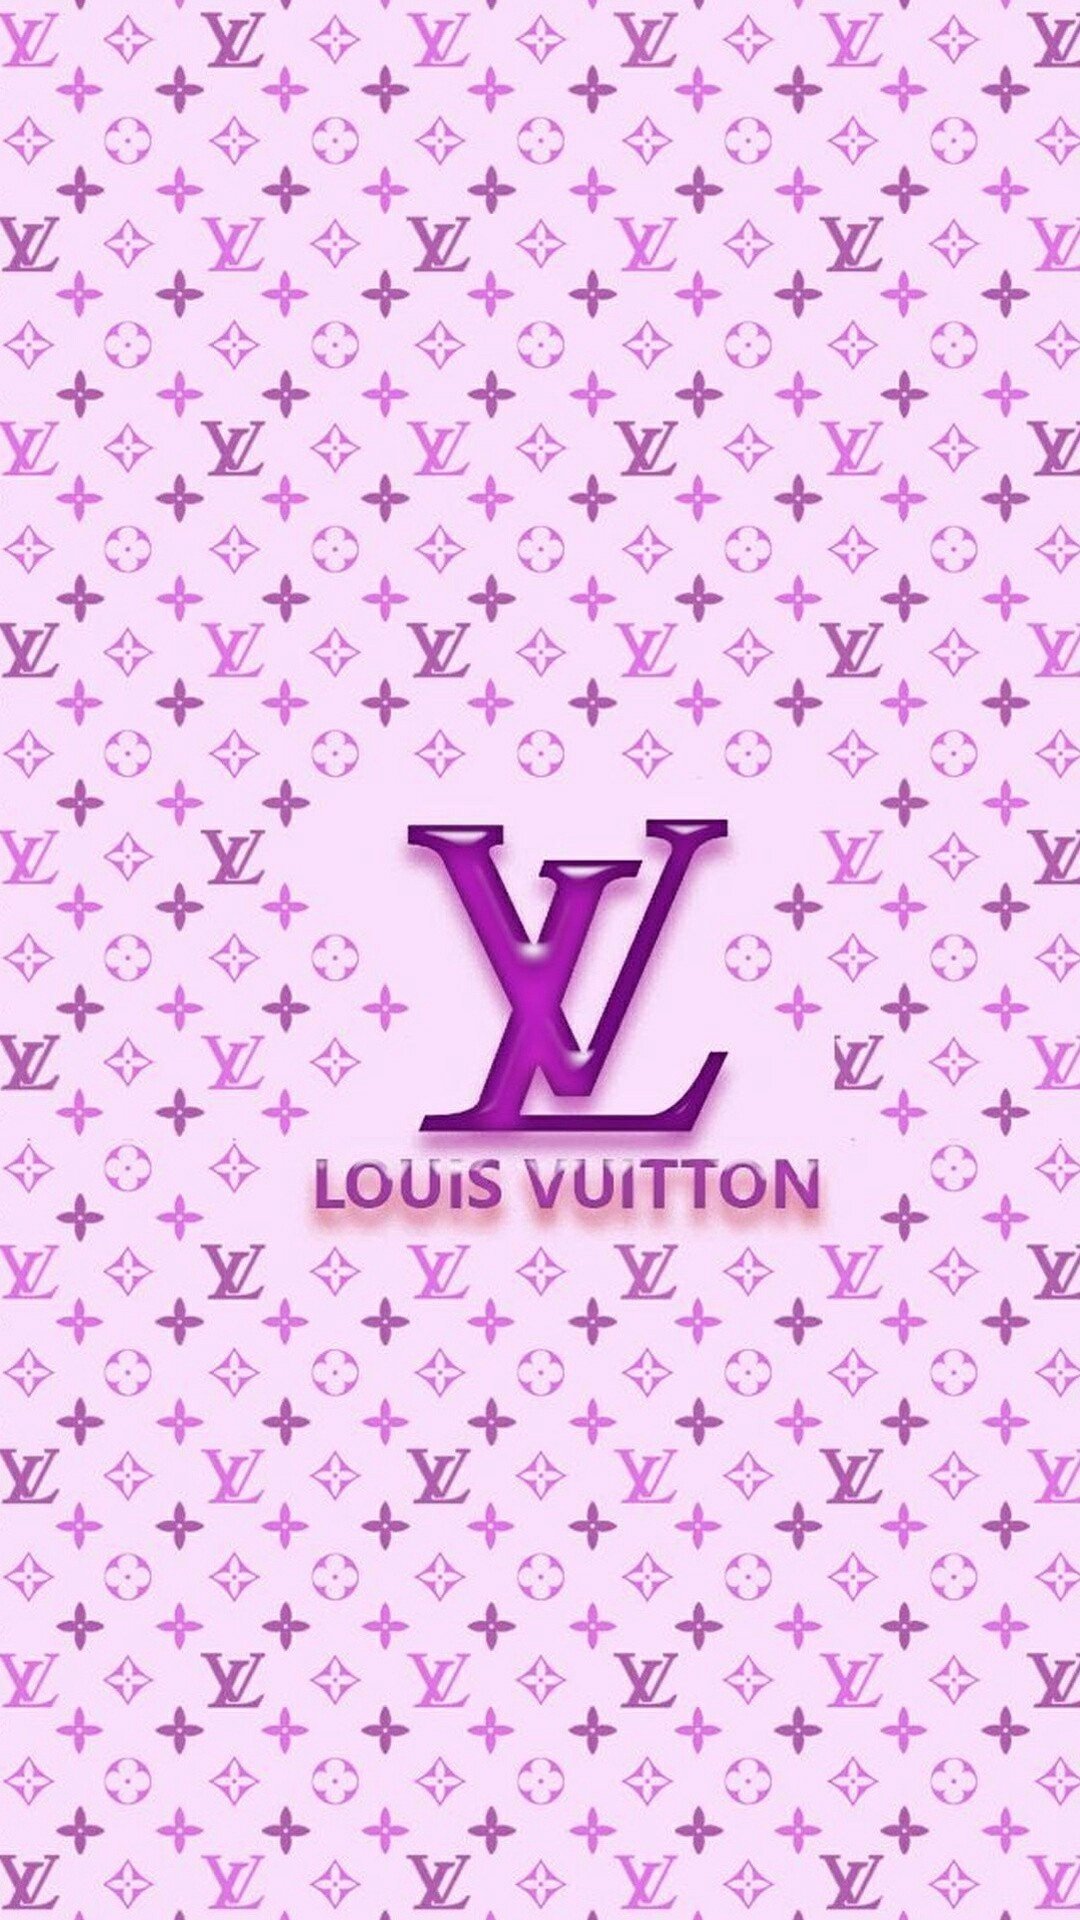 Луи Виттон логотип